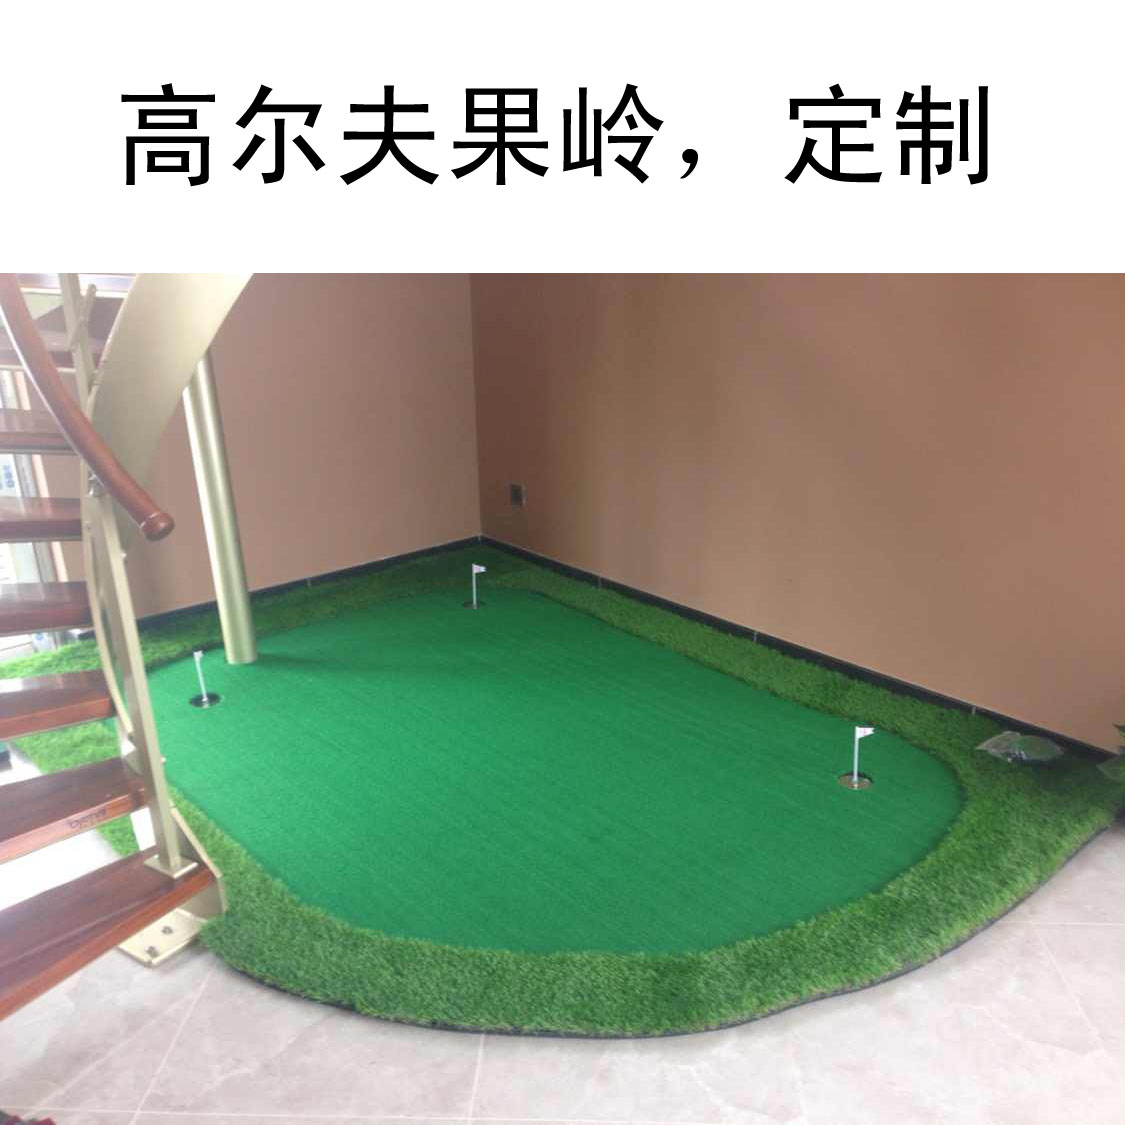 深圳高尔夫推杆练习器 定制尺寸 任何场地都可以施工 仿真果岭